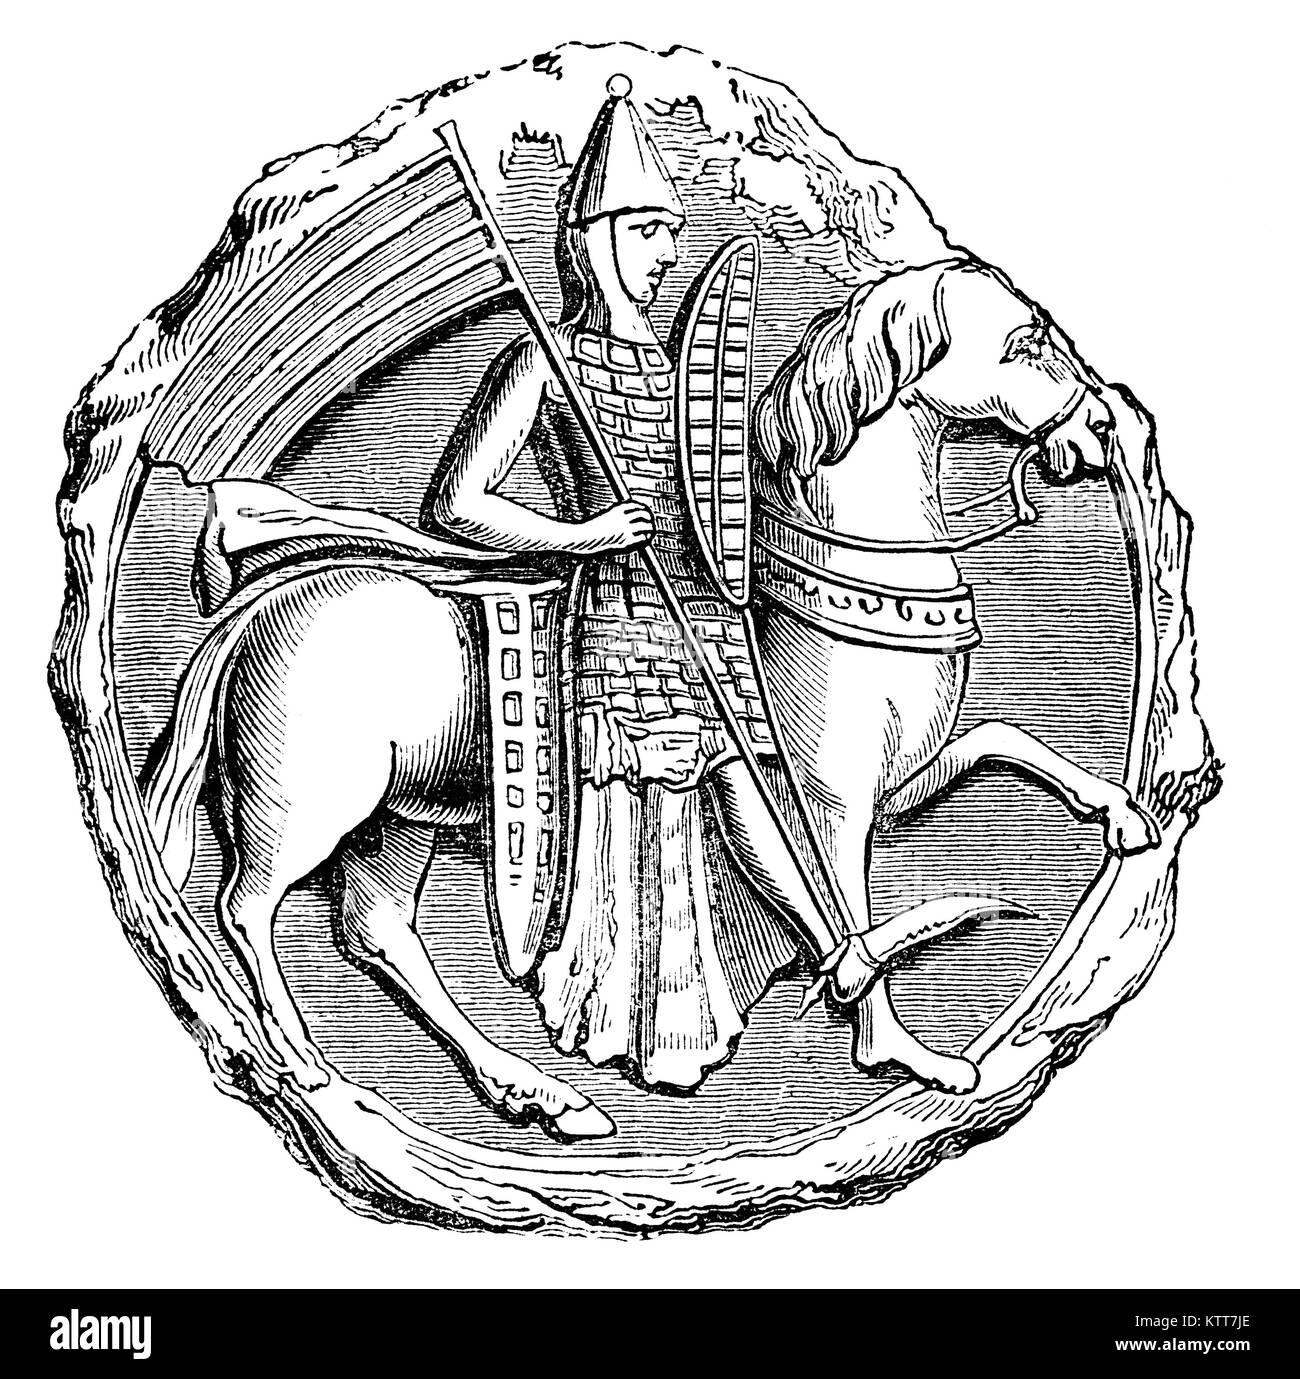 Au début du xiiie siècle un soldat médiéval à cheval portant des tegulated armor, composée de petites plaques, comme de corne ou de métal, qui se chevauchent comme des tuiles. Banque D'Images